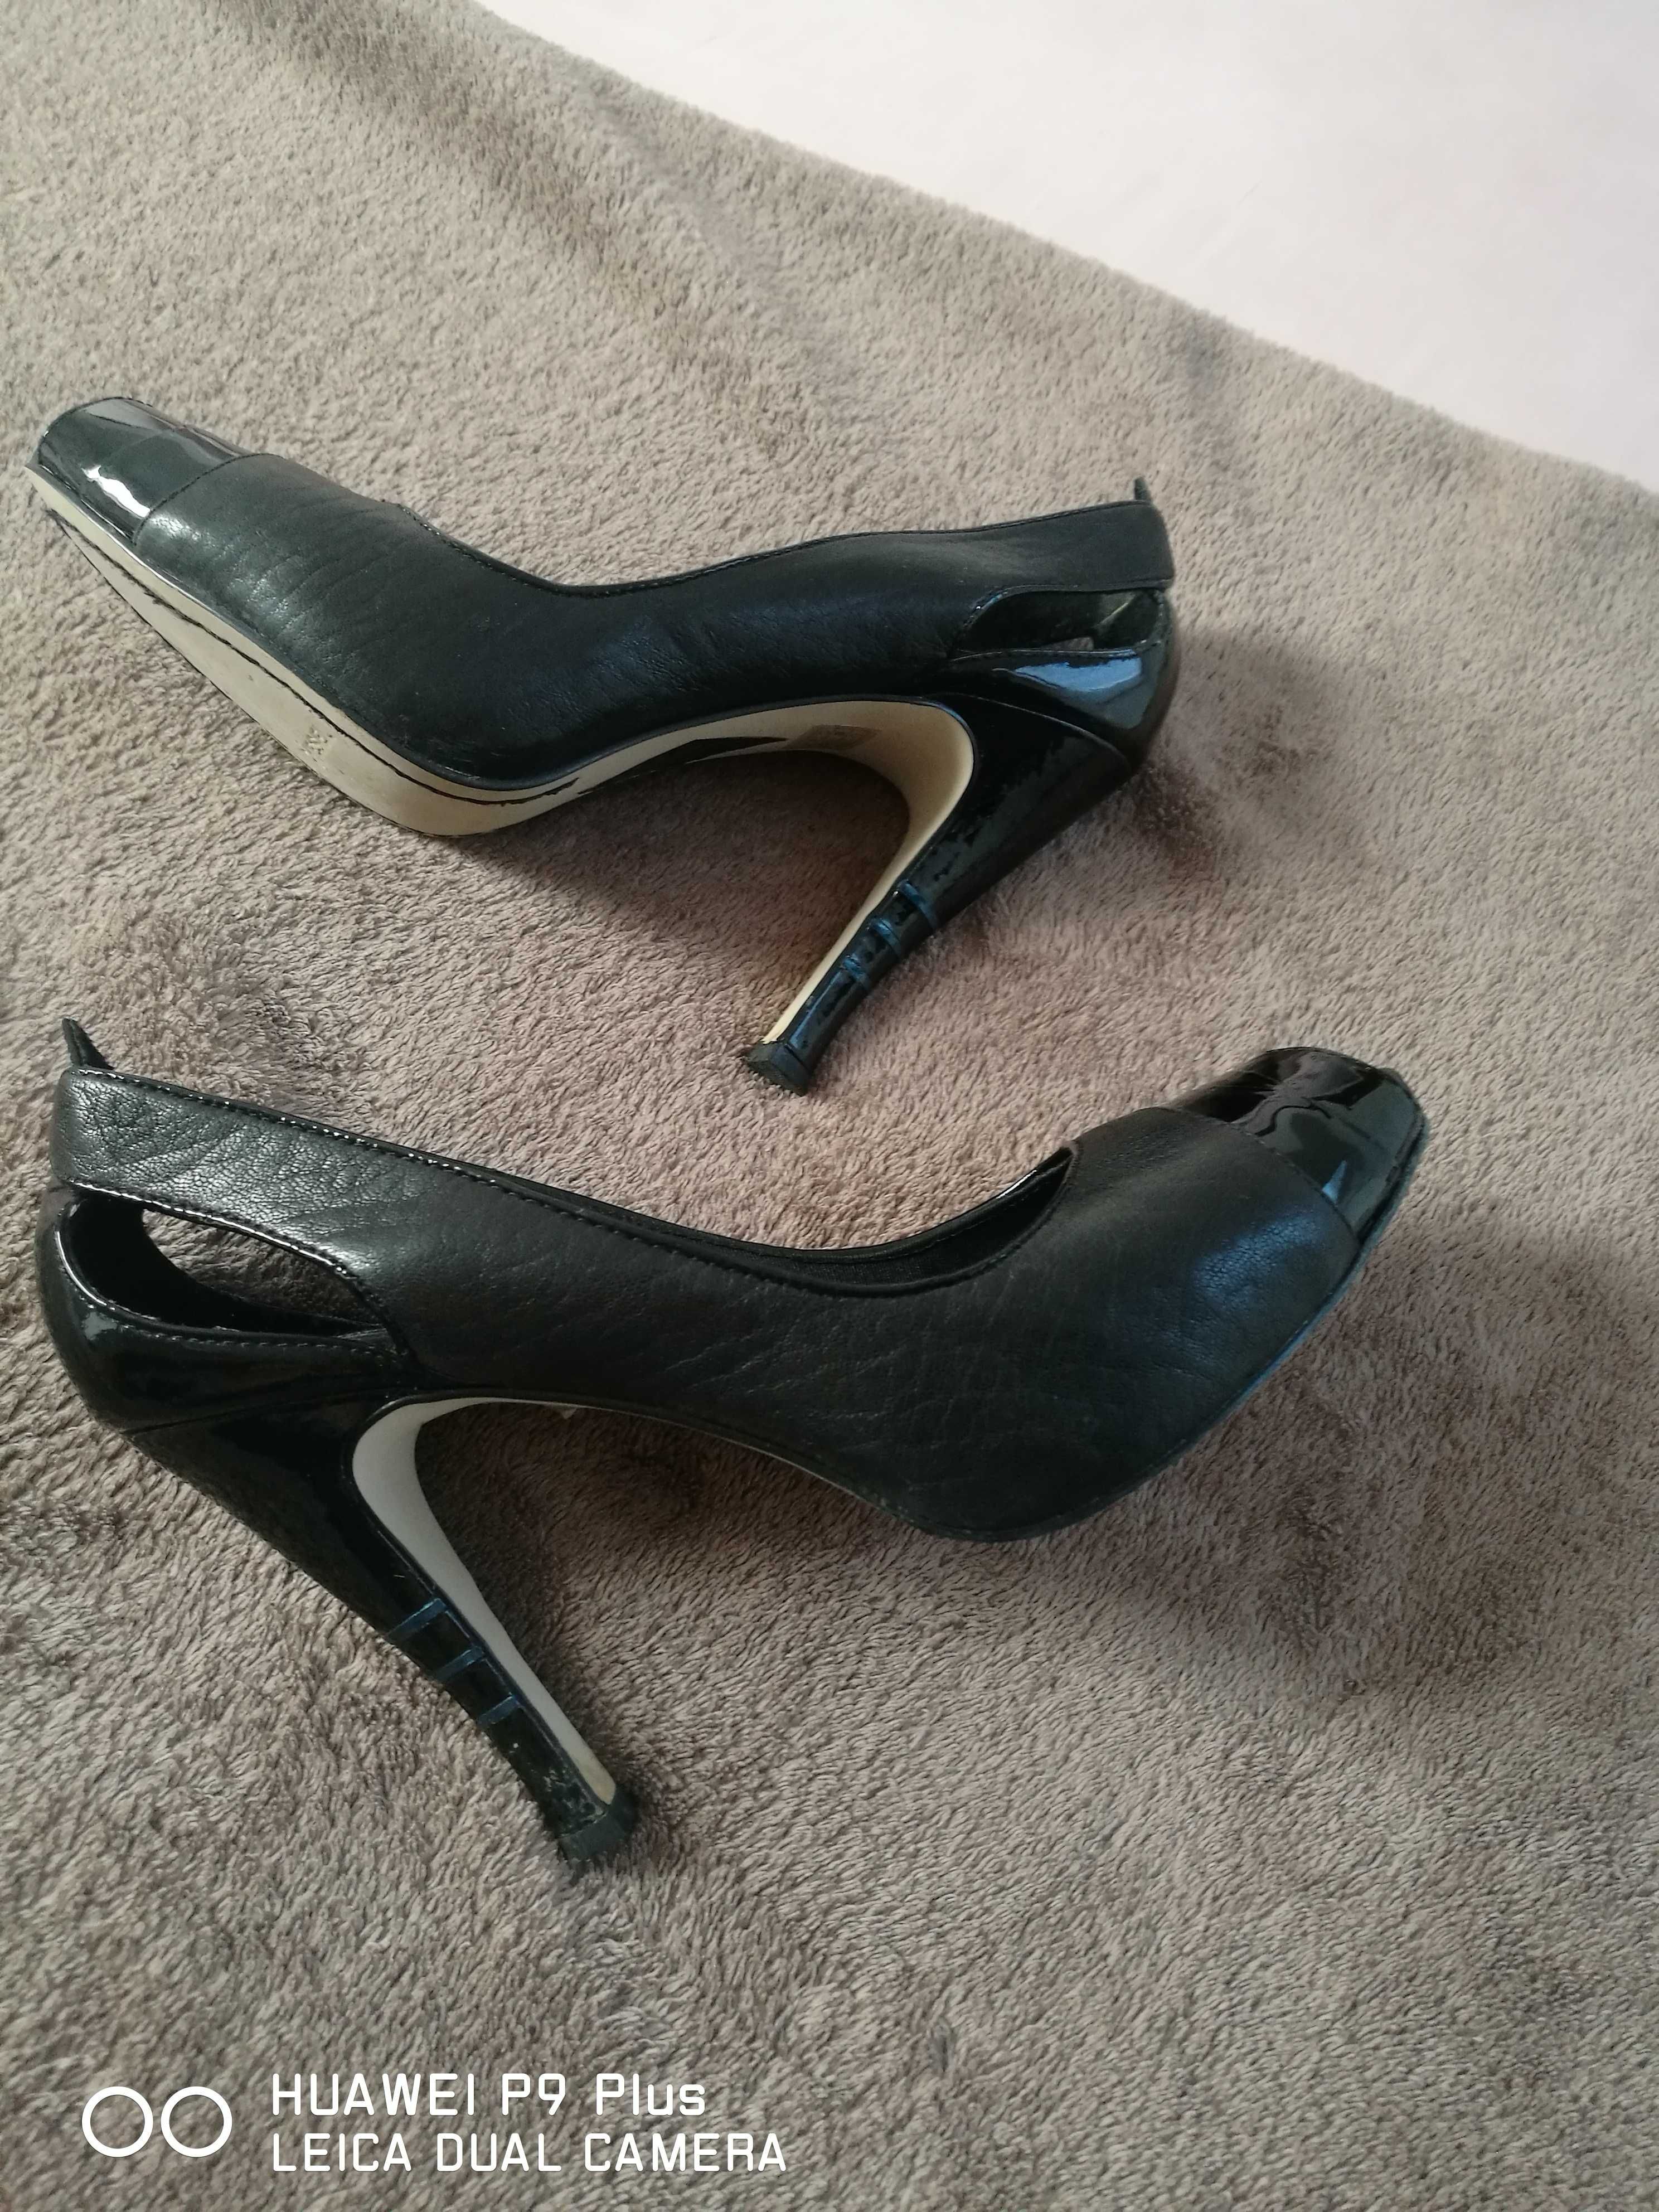 Дамски обувки с ток, черни